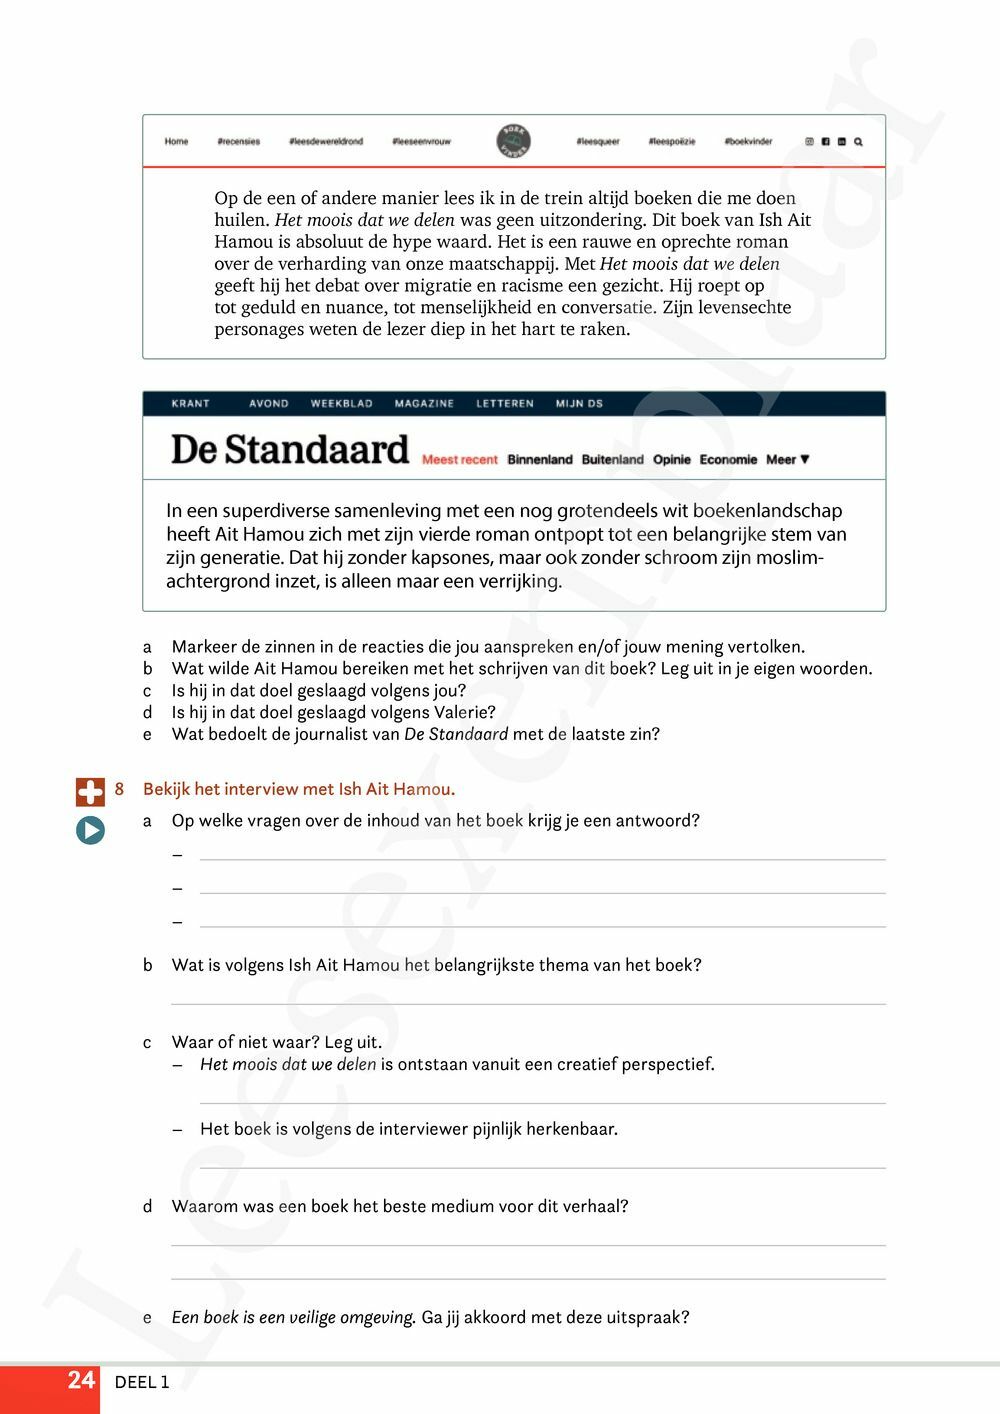 Preview: Campus Nederlands 4 Leerwerkboek (editie 2024) (incl. Pelckmans Portaal)